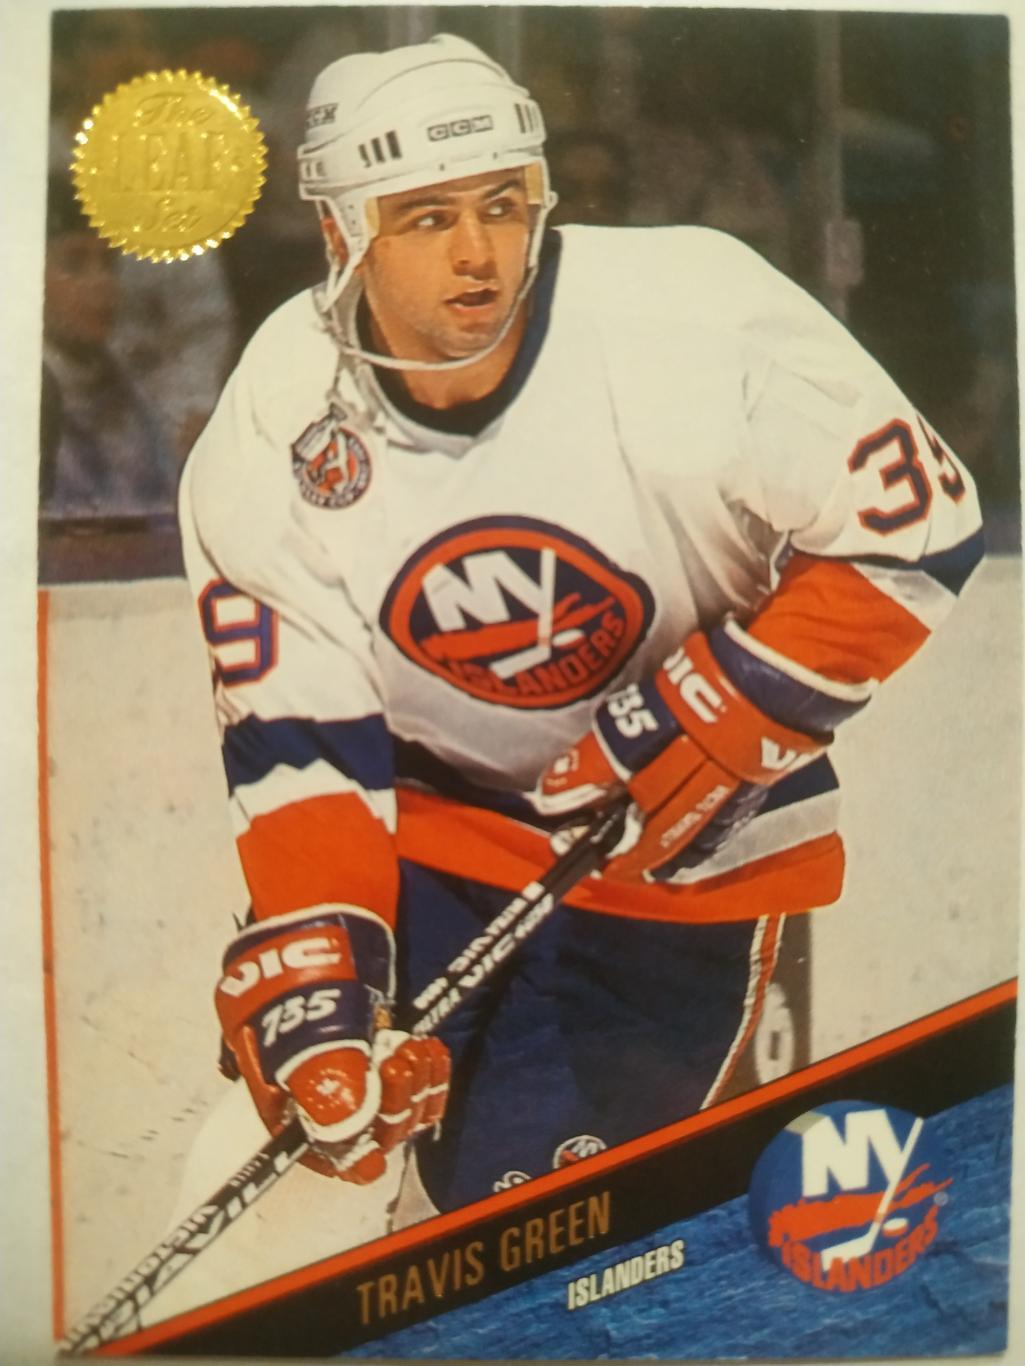 ХОККЕЙ КАРТОЧКА НХЛ LEAF SET SERIES ONE 1993-94 TRAVIS GREEN ISLANDERS #127